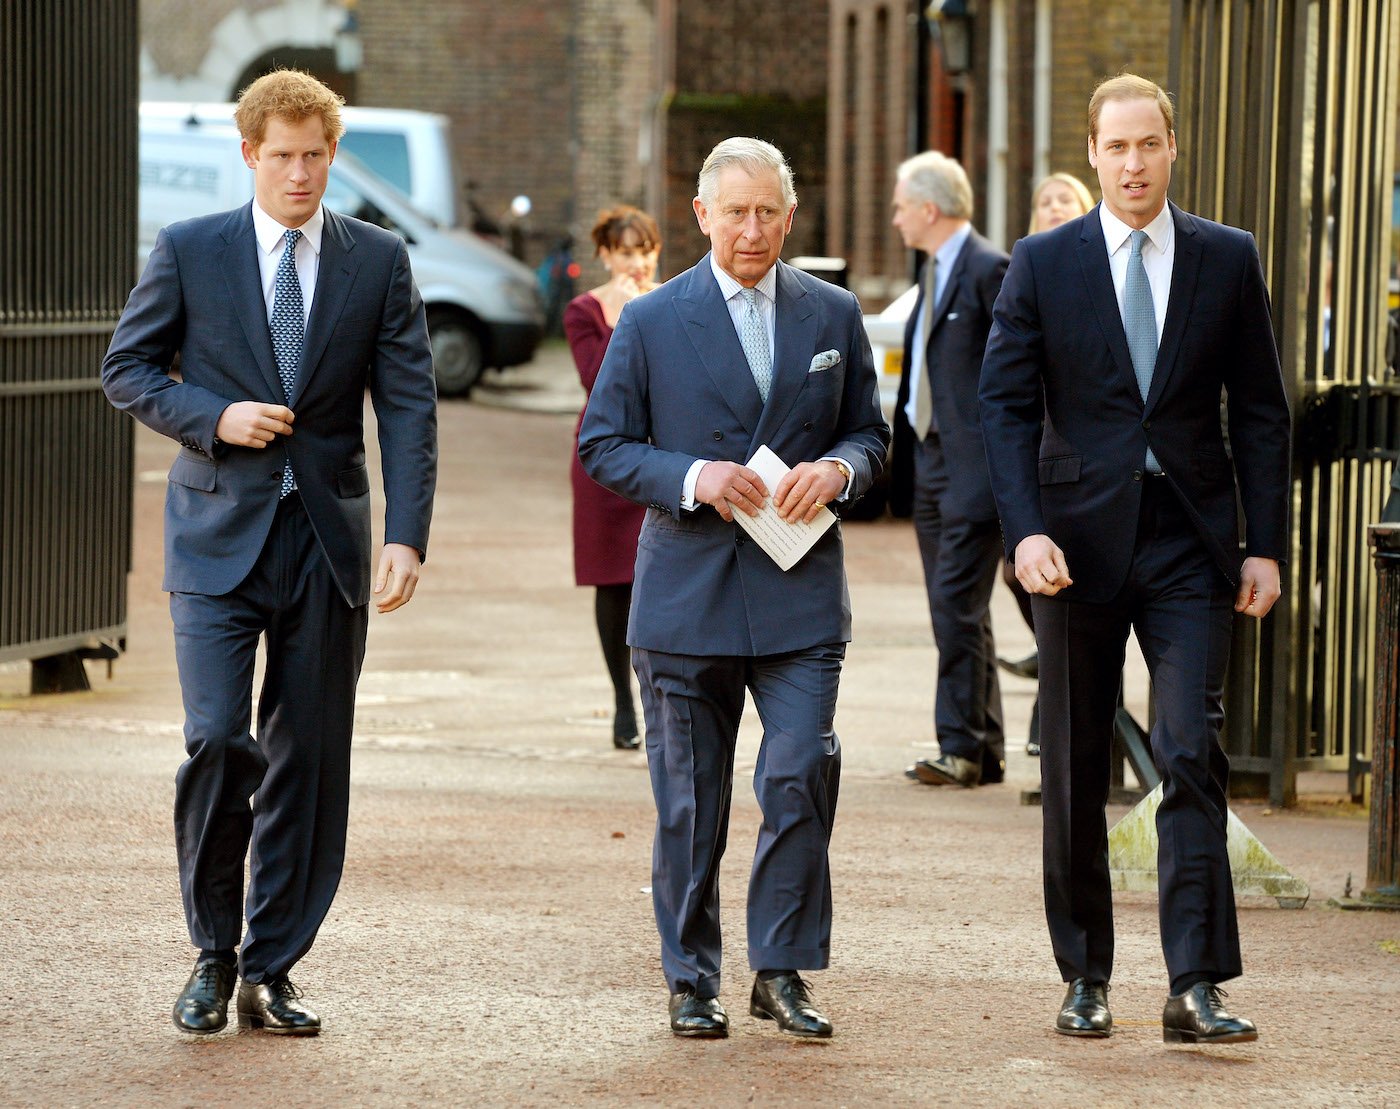 Famille royale: le roi Charles, le prince William, Harry et Meghan Markle énormes défis autour des élections américaines de mi-mandat, prédit un astrologue